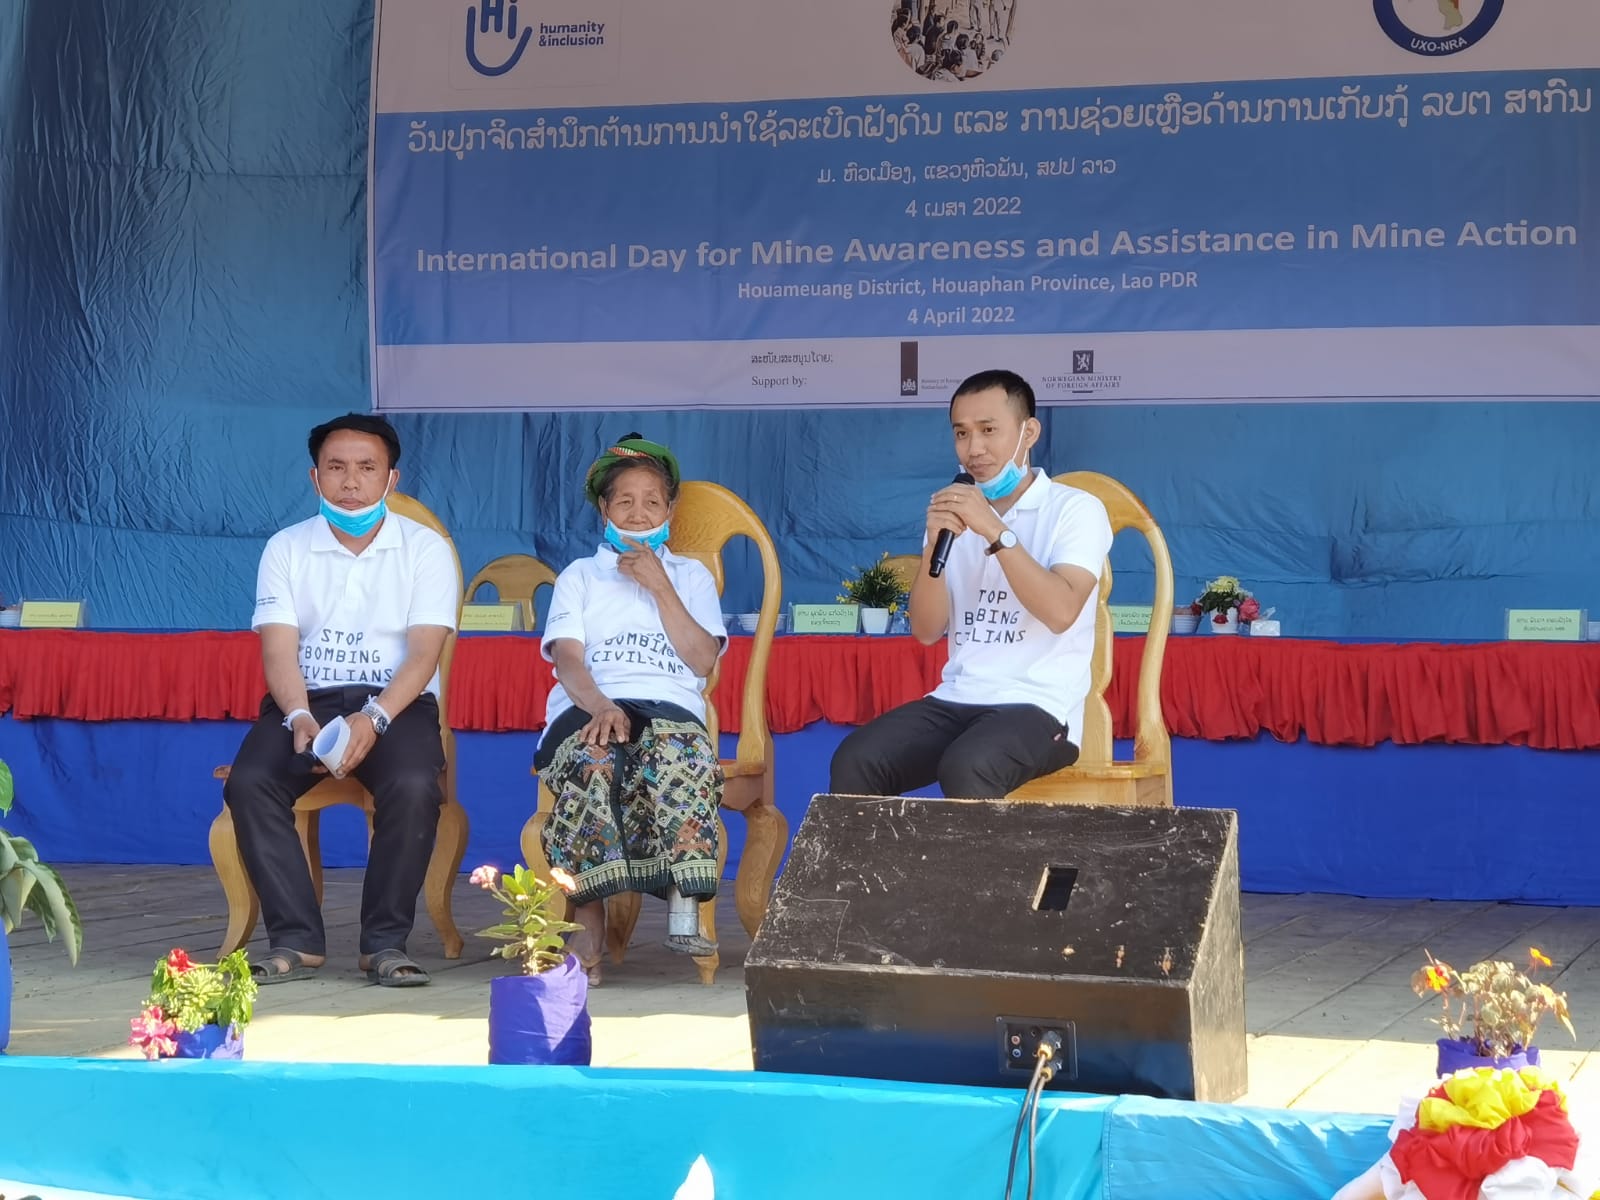  Mme Chanh est au milieu de la photo) sur la scène où elle partage son expérience et son histoire lors de la Journée internationale de sensibilisation aux mines et d'assistance à la lutte antimines à Houameuang le 4 avril 2022.